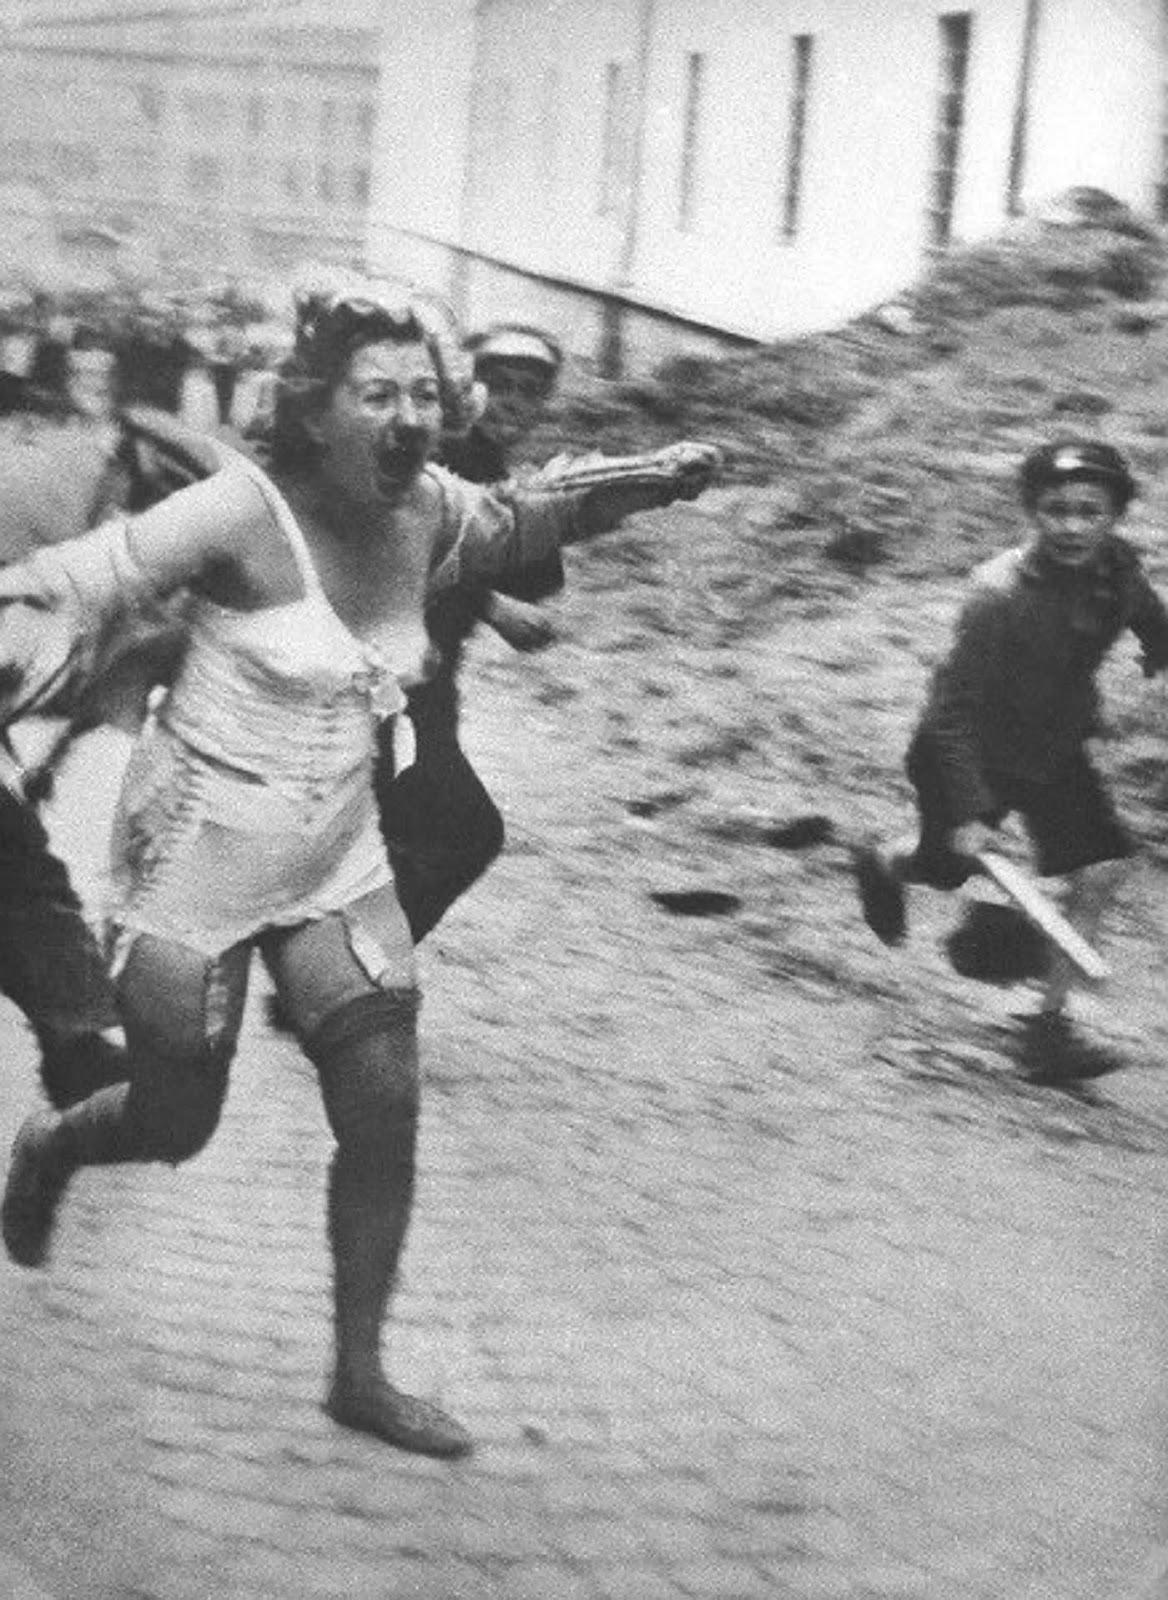 Femme juive poursuivie par des hommes et des jeunes armés de gourdins lors des pogroms de Lviv, 1941